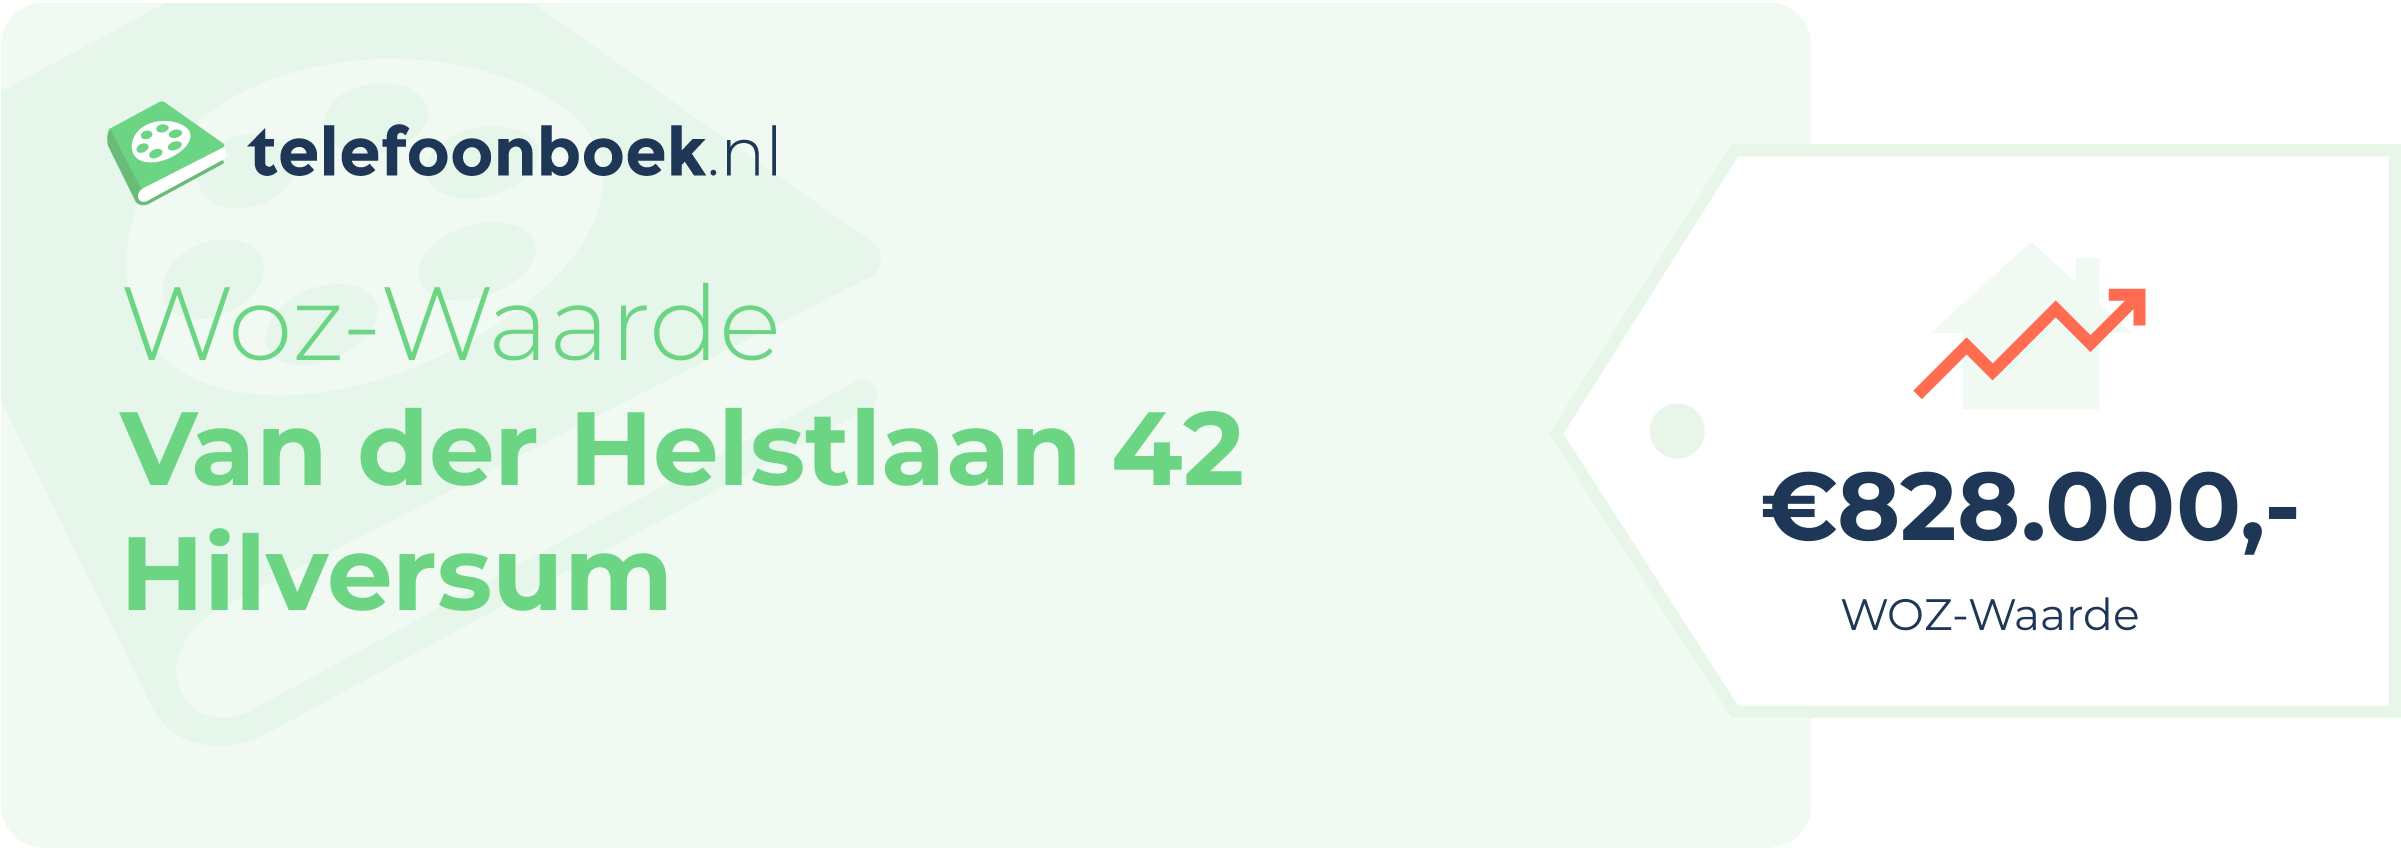 WOZ-waarde Van Der Helstlaan 42 Hilversum